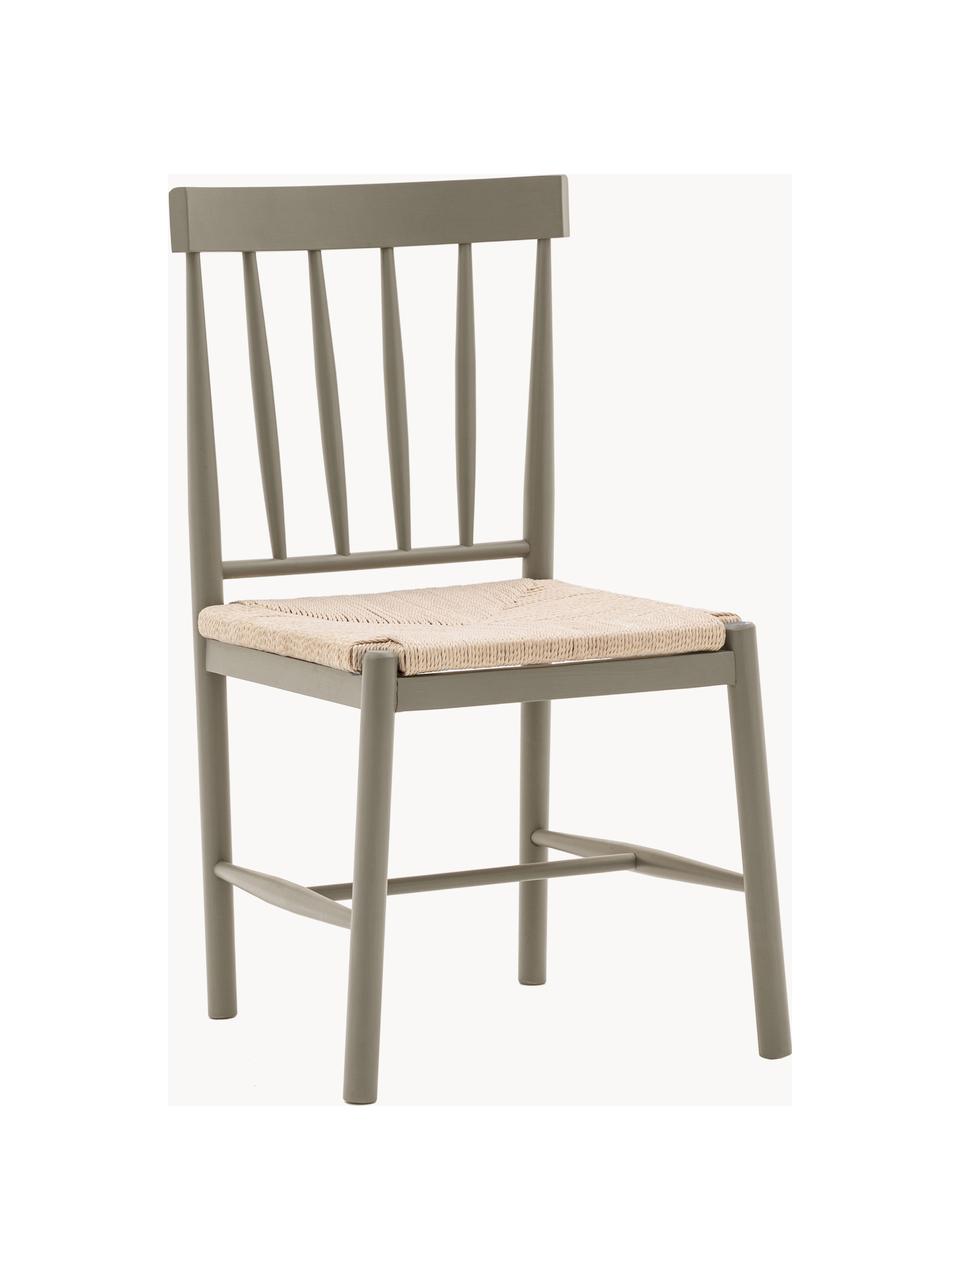 Holzstühle Eton mit Binsengeflecht, 2 Stück, Gestell: Buchenholz, lackiert, Sitzfläche: Binsengeflecht, Taupe, Hellbeige, B 46 x T 45 cm